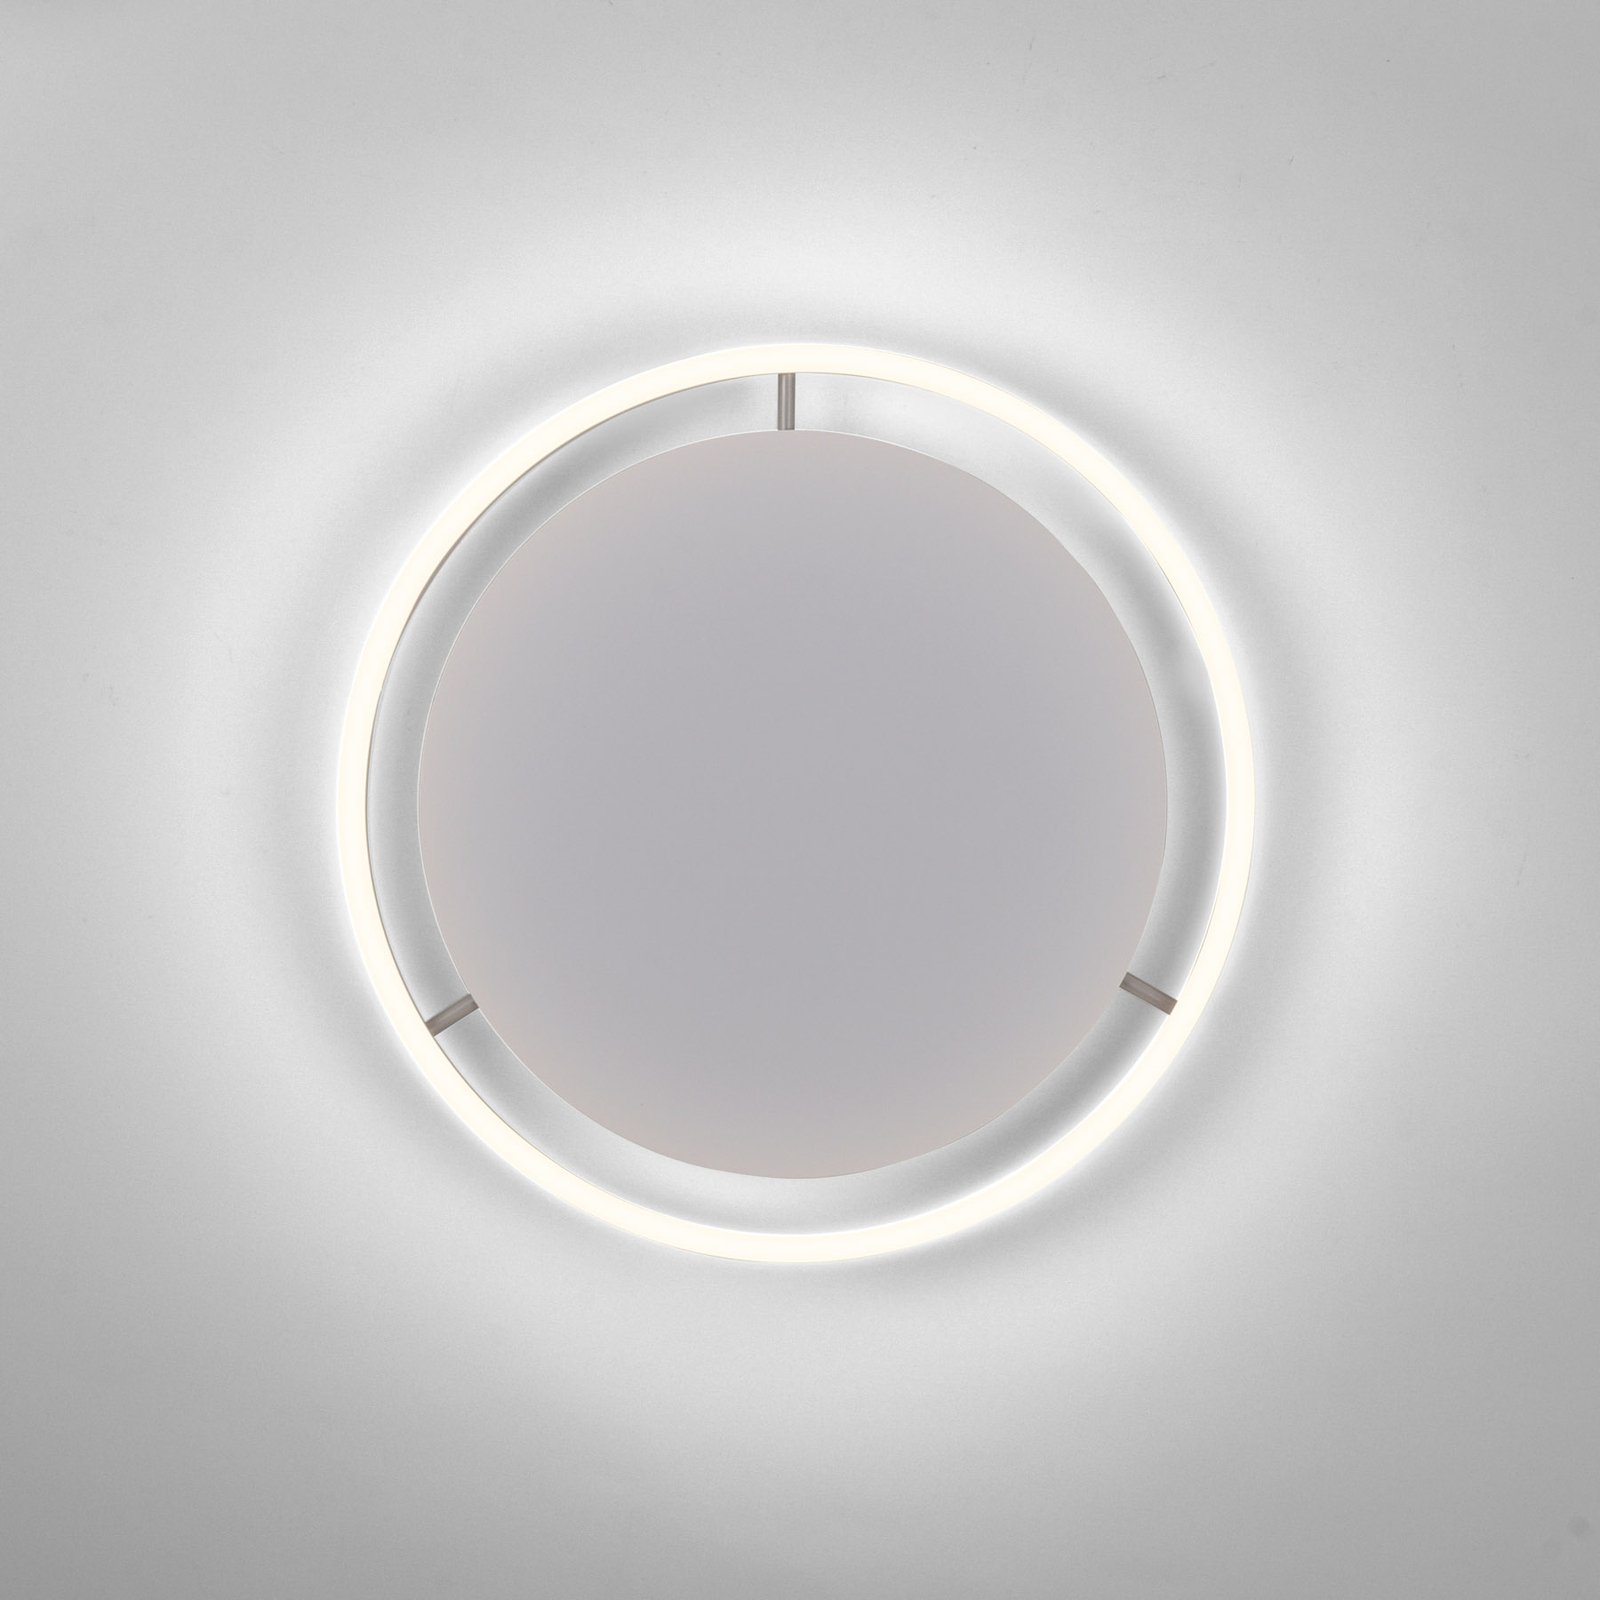 LED plafondlamp Ritus, Ø 39,3cm, aluminium